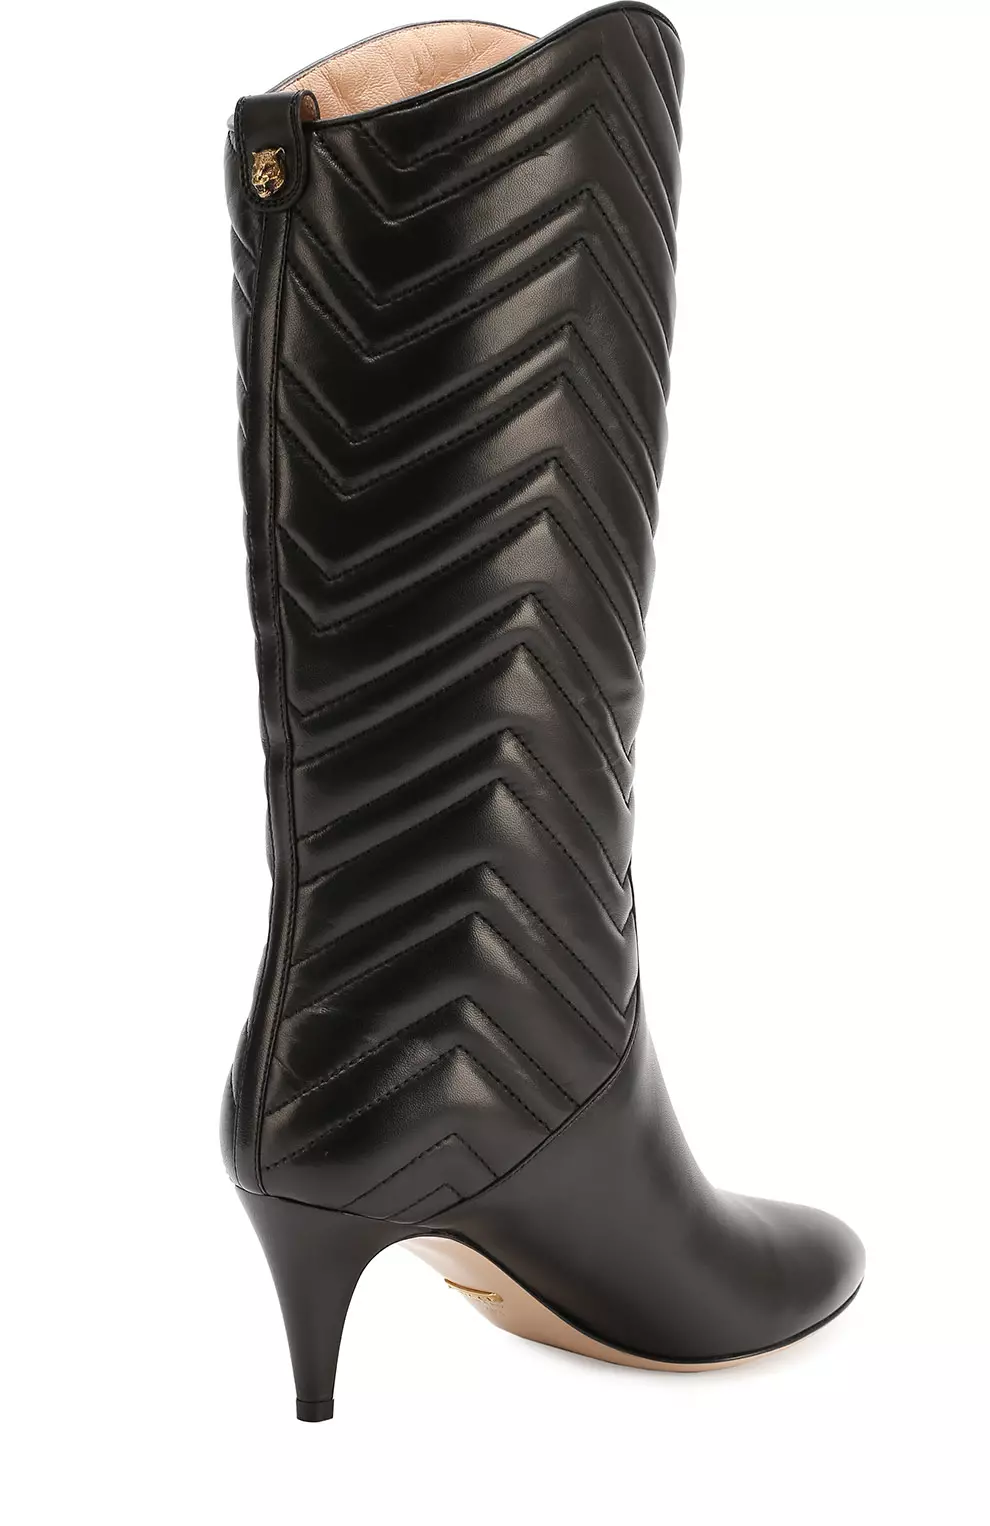 Gucci Boots (38 foto): Modelli da donna per l'inverno 2208_19